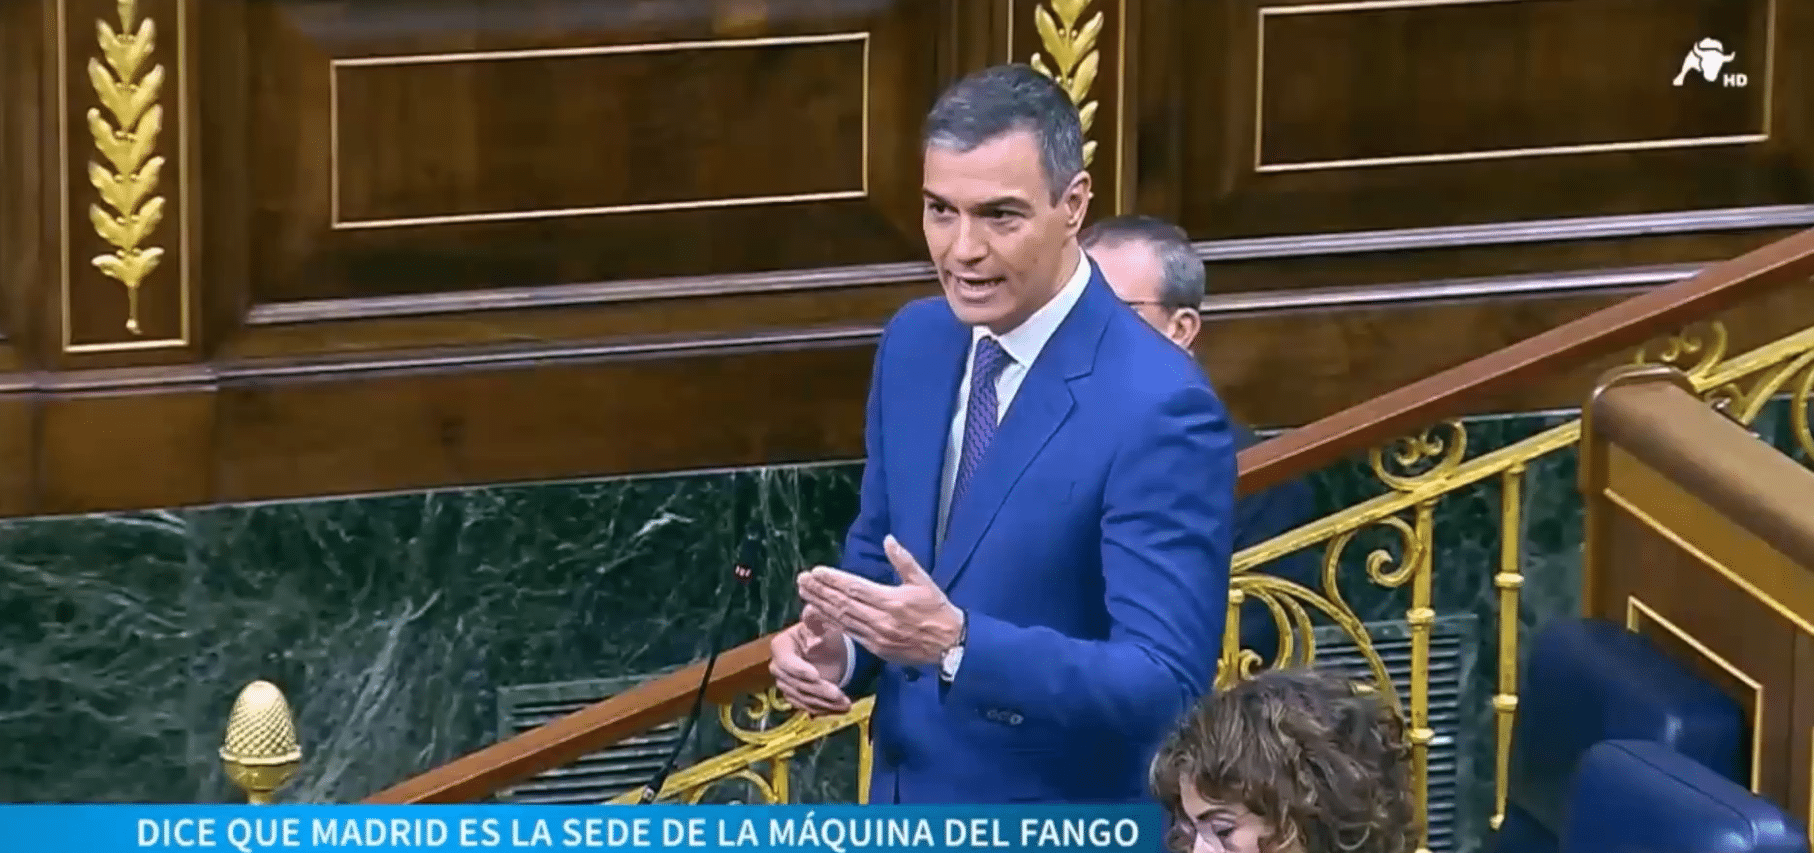 Fango, bulos, ultraderecha y ahora Alvise: las palabras favoritas de Sánchez para atacar a PP y VOX